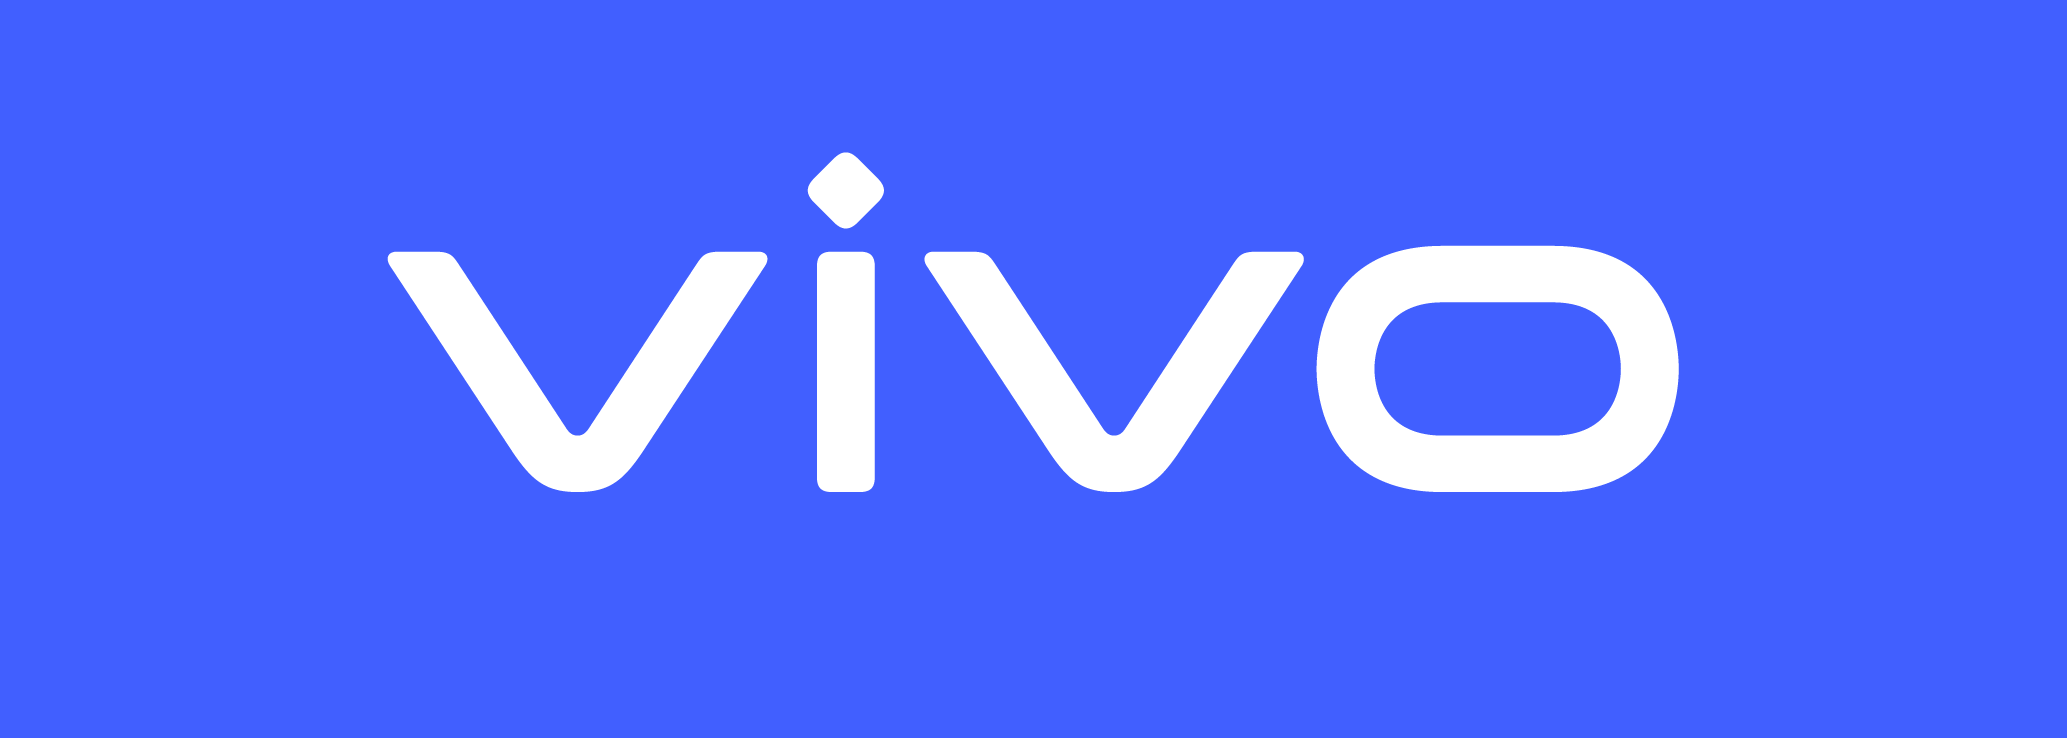 Компания Vivo анонсировала смартфон-хамелеон, корпус которого меняет цвет